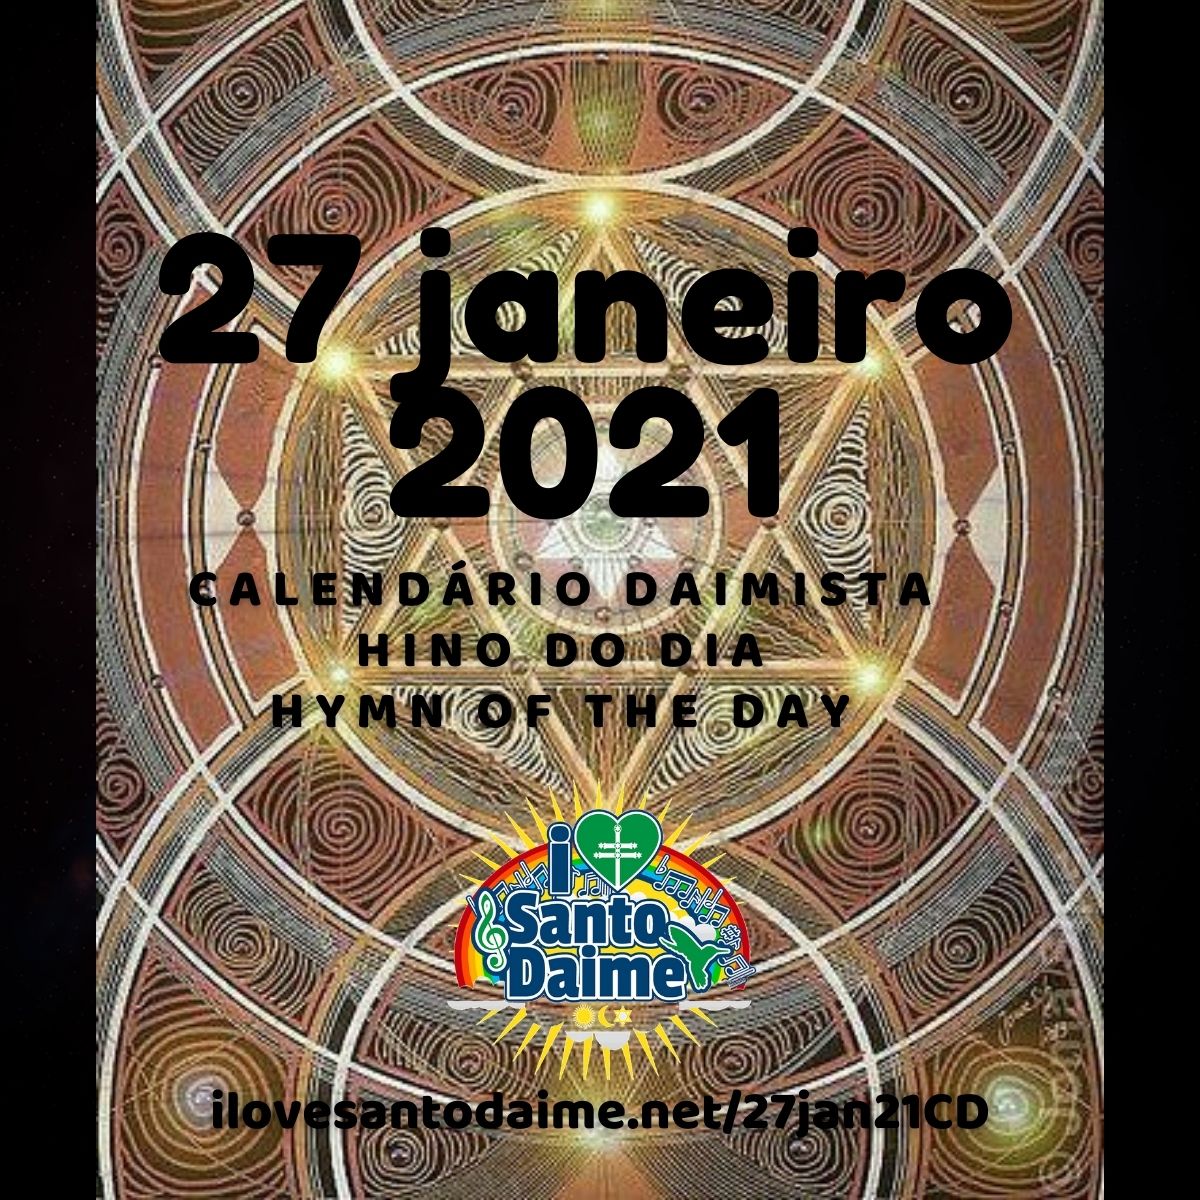 27jan21 Calendario Daimista pérola do dia